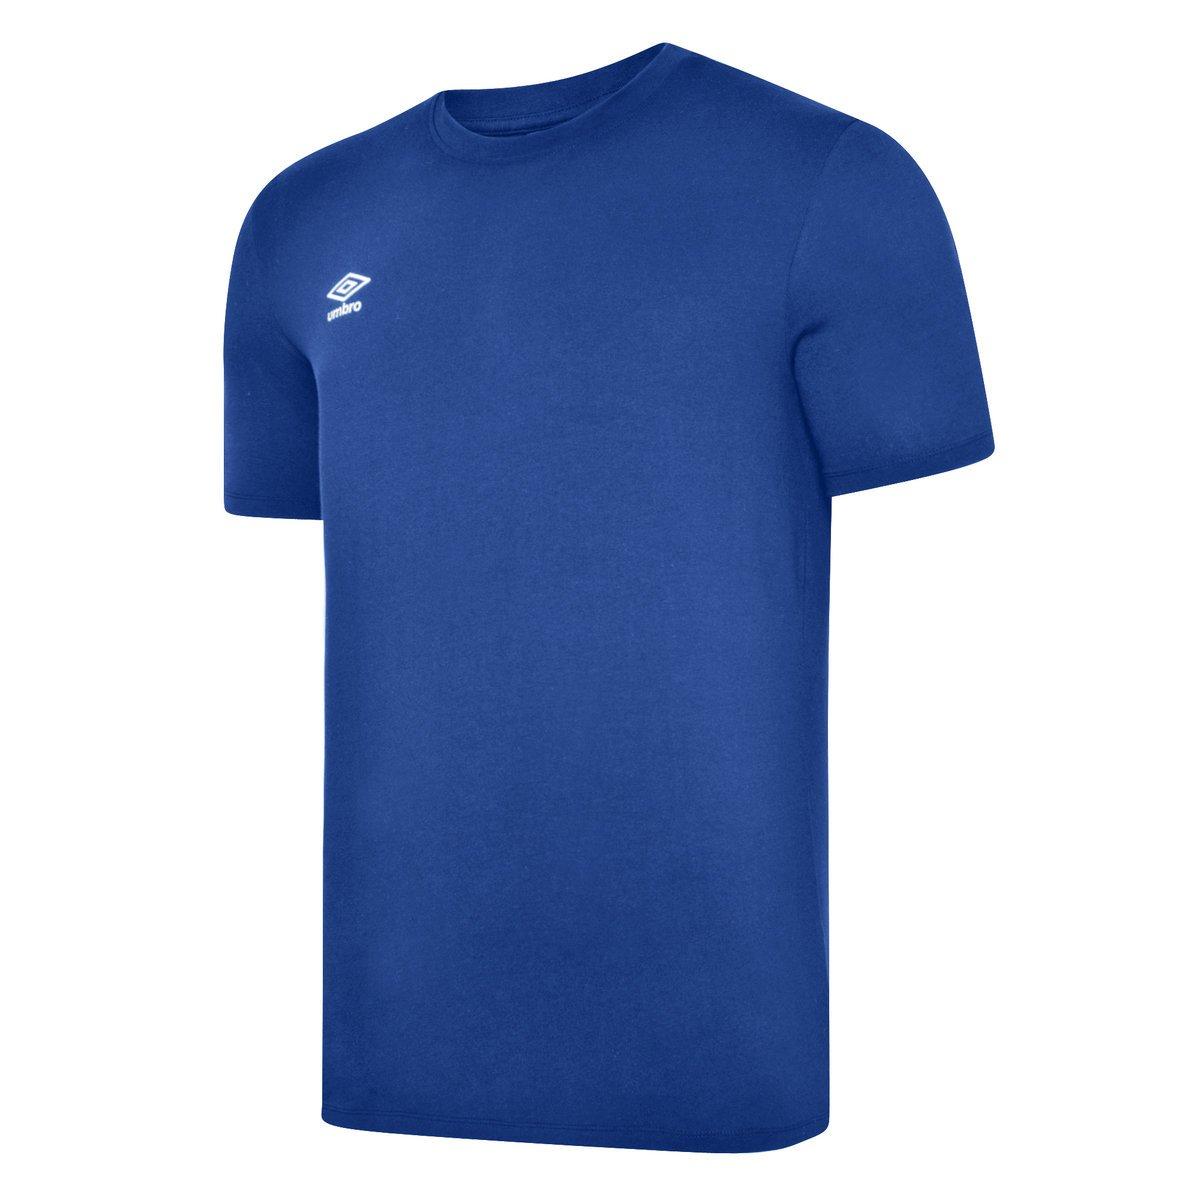 Club Leisure Tshirt Herren Blau S von Umbro